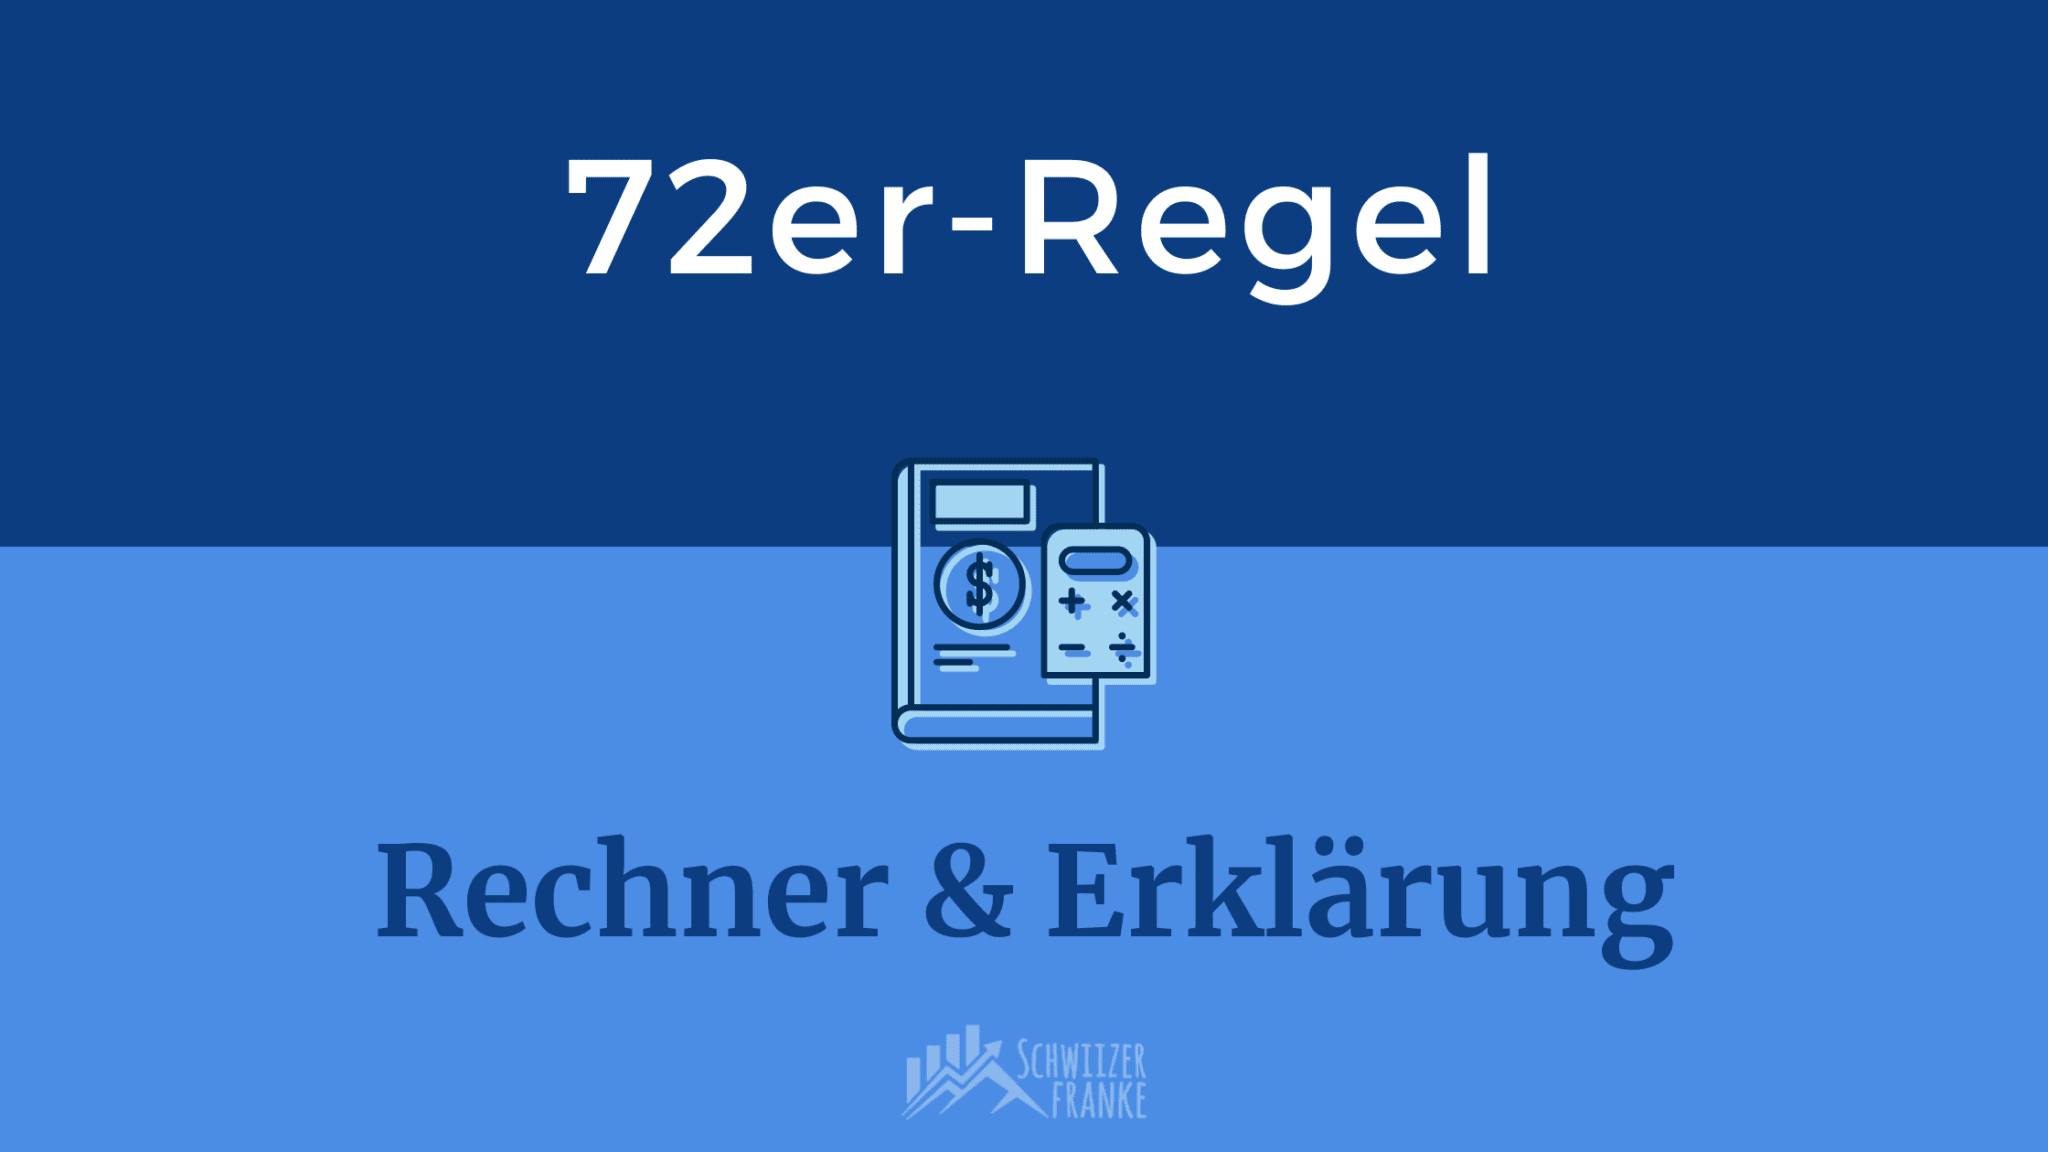 72er Regel Rechner 72er Regel Herleitung 72er Regel Erklärung Rule of 72